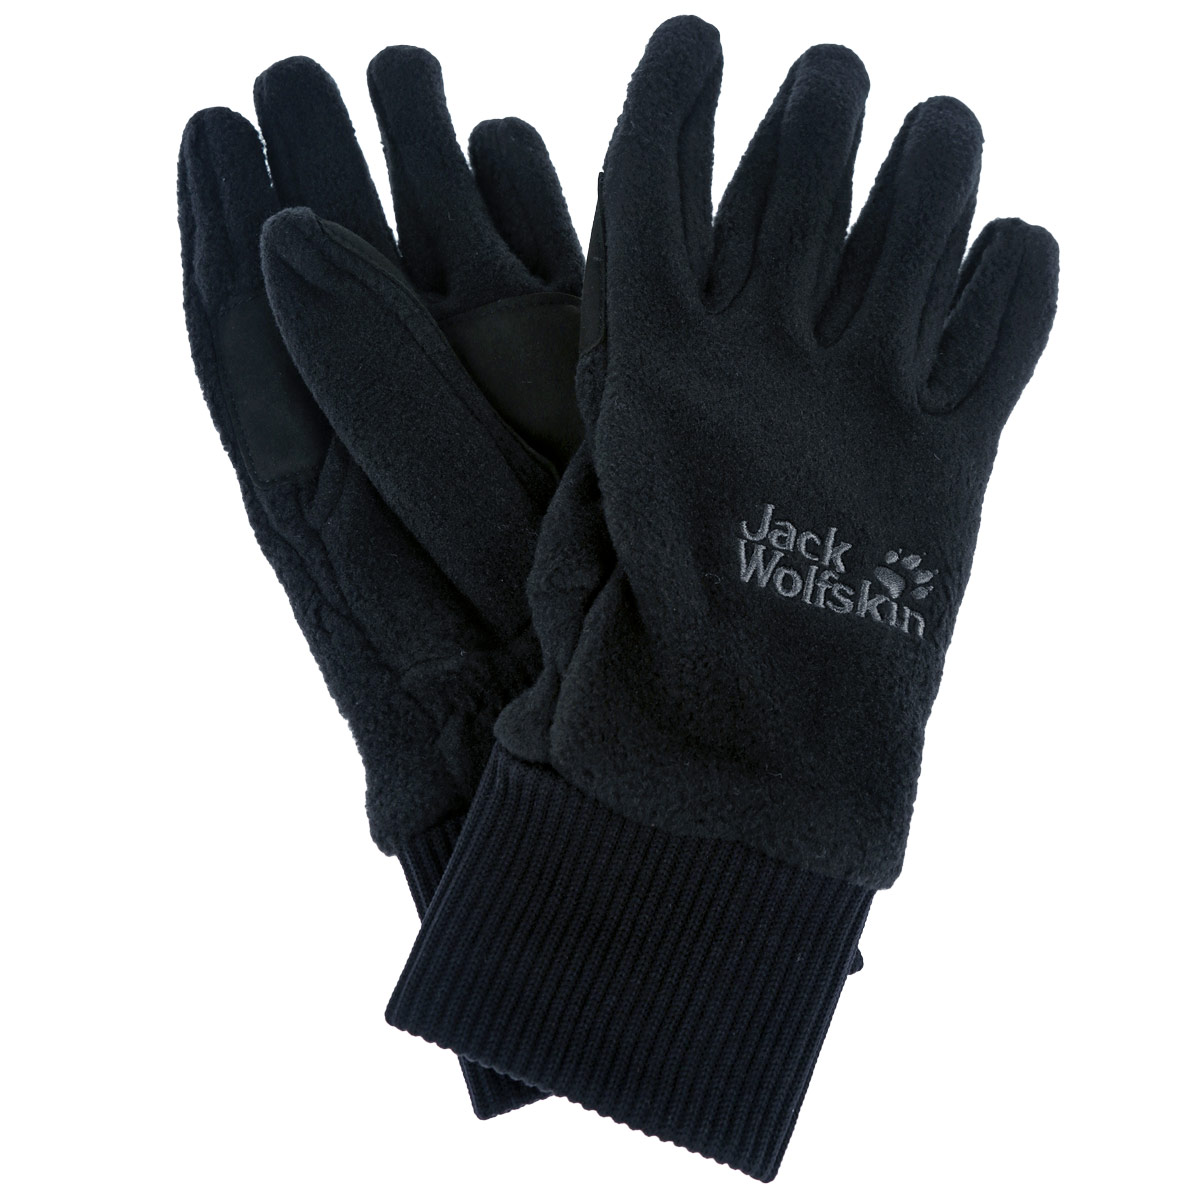 Перчатки унисекс Jack Wolfskin Vertigo Glove, цвет: черный. 1901751-6000. Размер L (8,5/9)